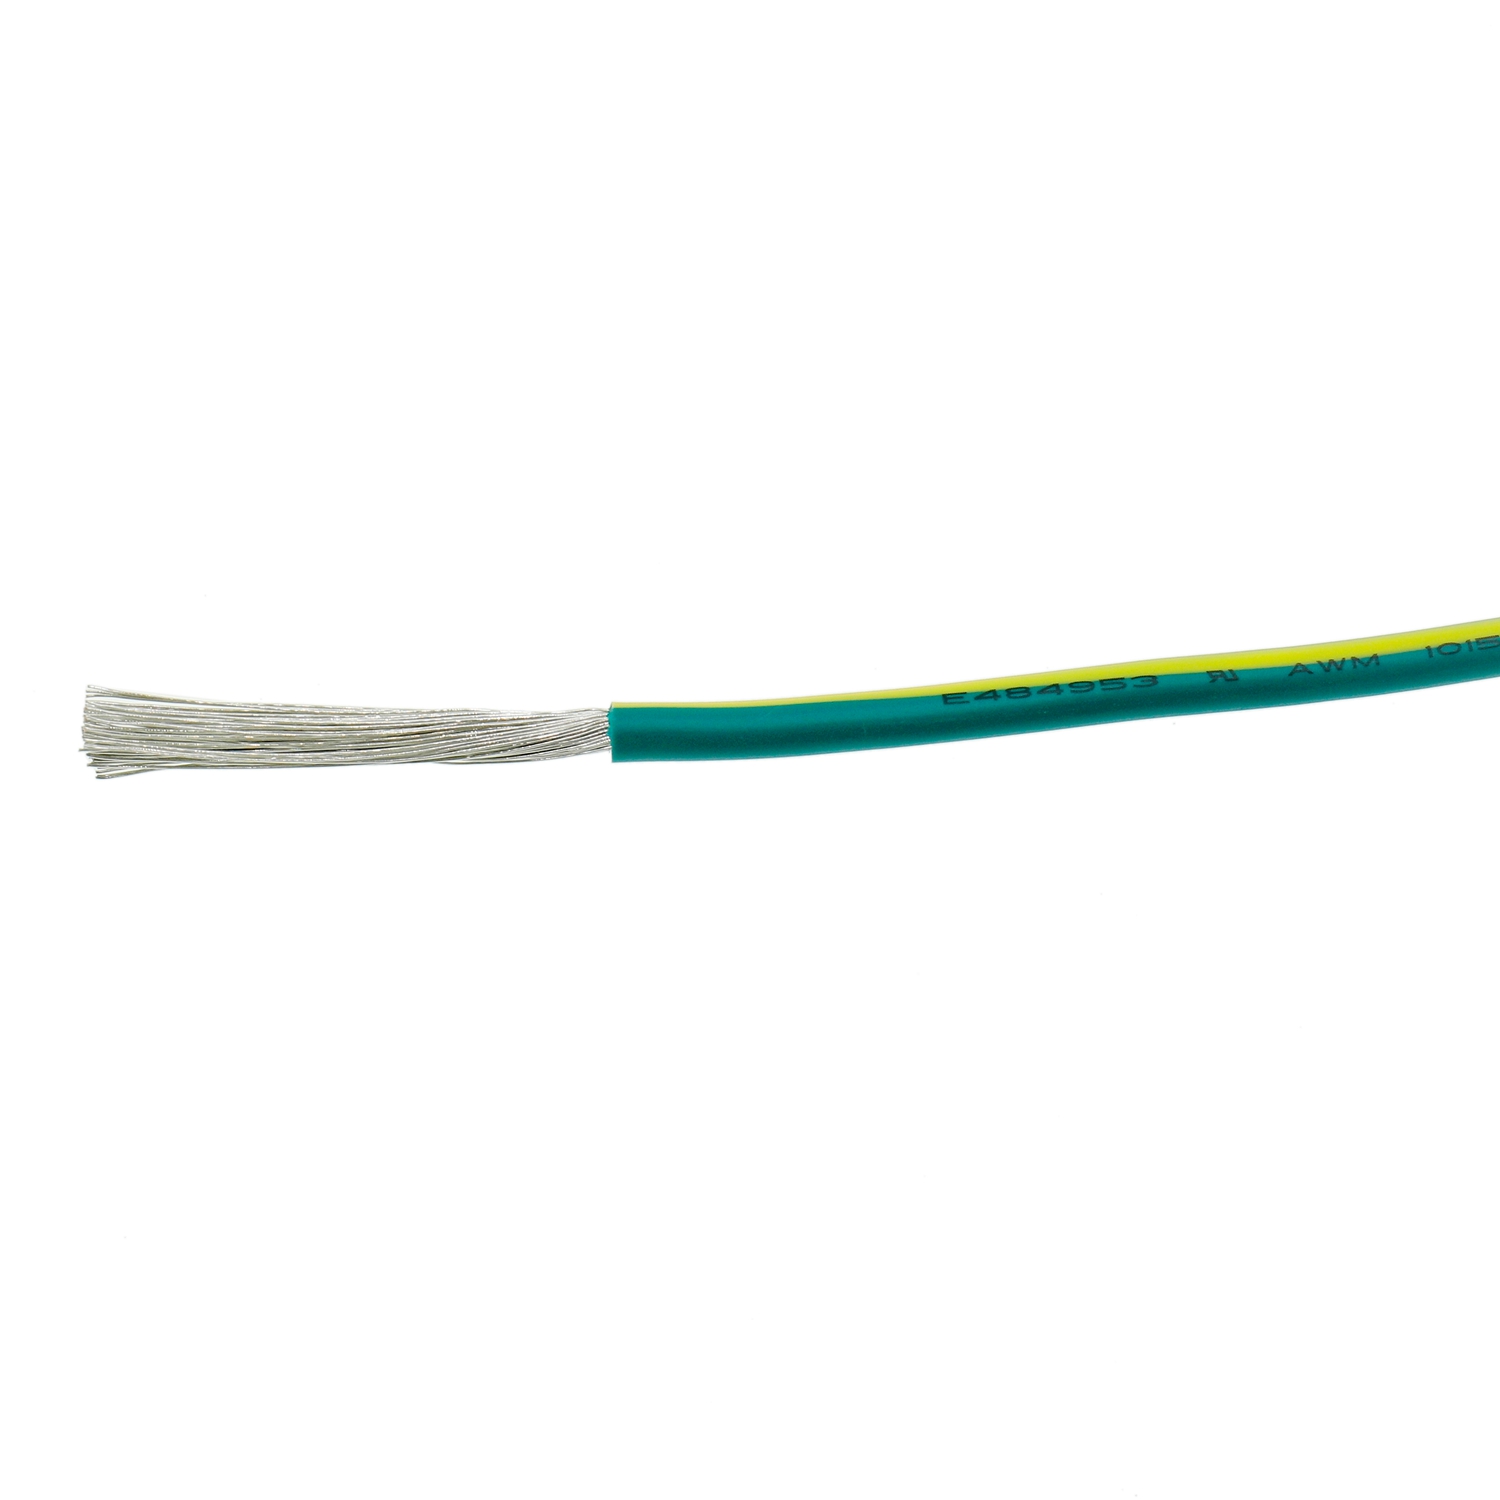 Bajo voltaje del verde amarillo del cable de alimentación eléctrica de UL1015 8AWG